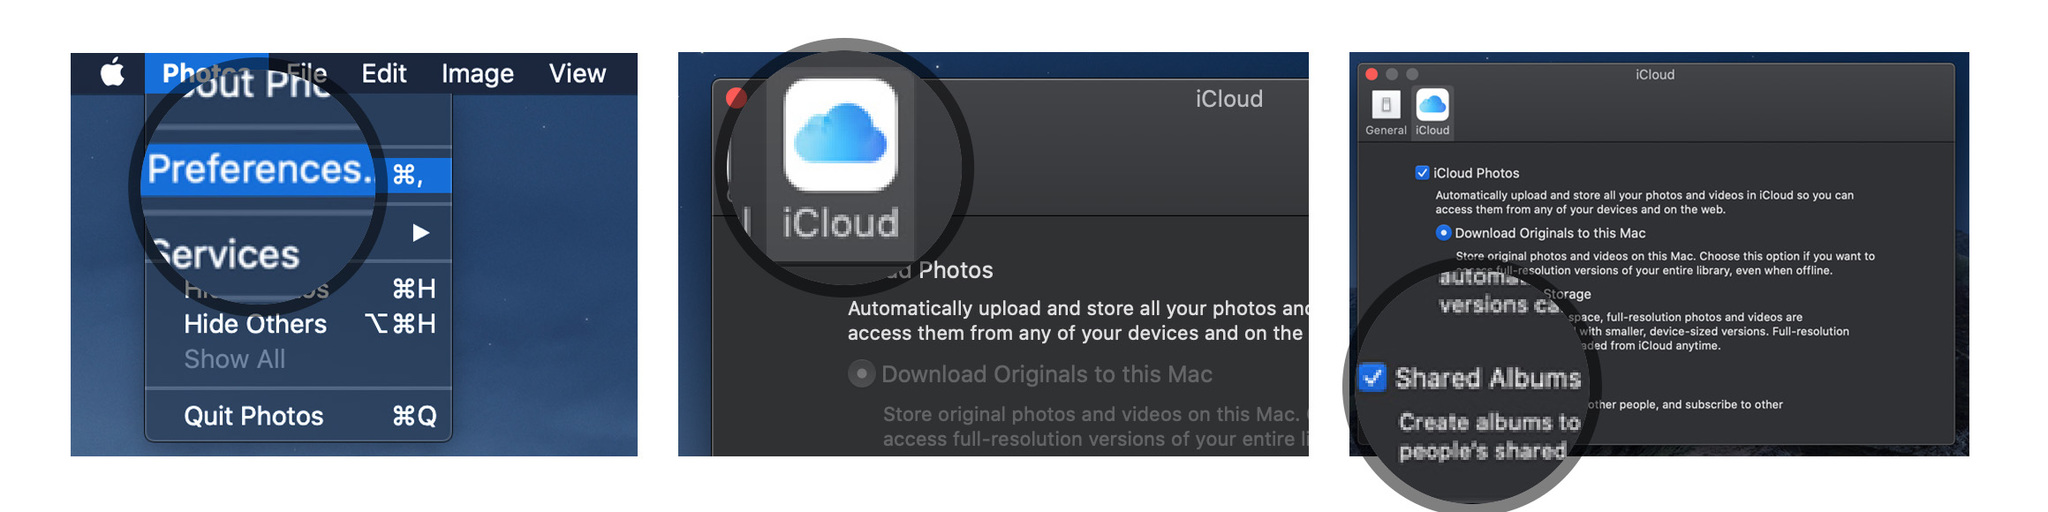 Включите «Фото iCloud» на Mac, показывая шаги. Запустите приложение «Фото» на своем Mac, выберите «Фото» в меню приложения в верхнем левом углу, выберите «Настройки» в раскрывающемся меню, выберите вкладку iCloud, установите флажок «Фото iCloud», установите флажок коробка для общих альбомов.